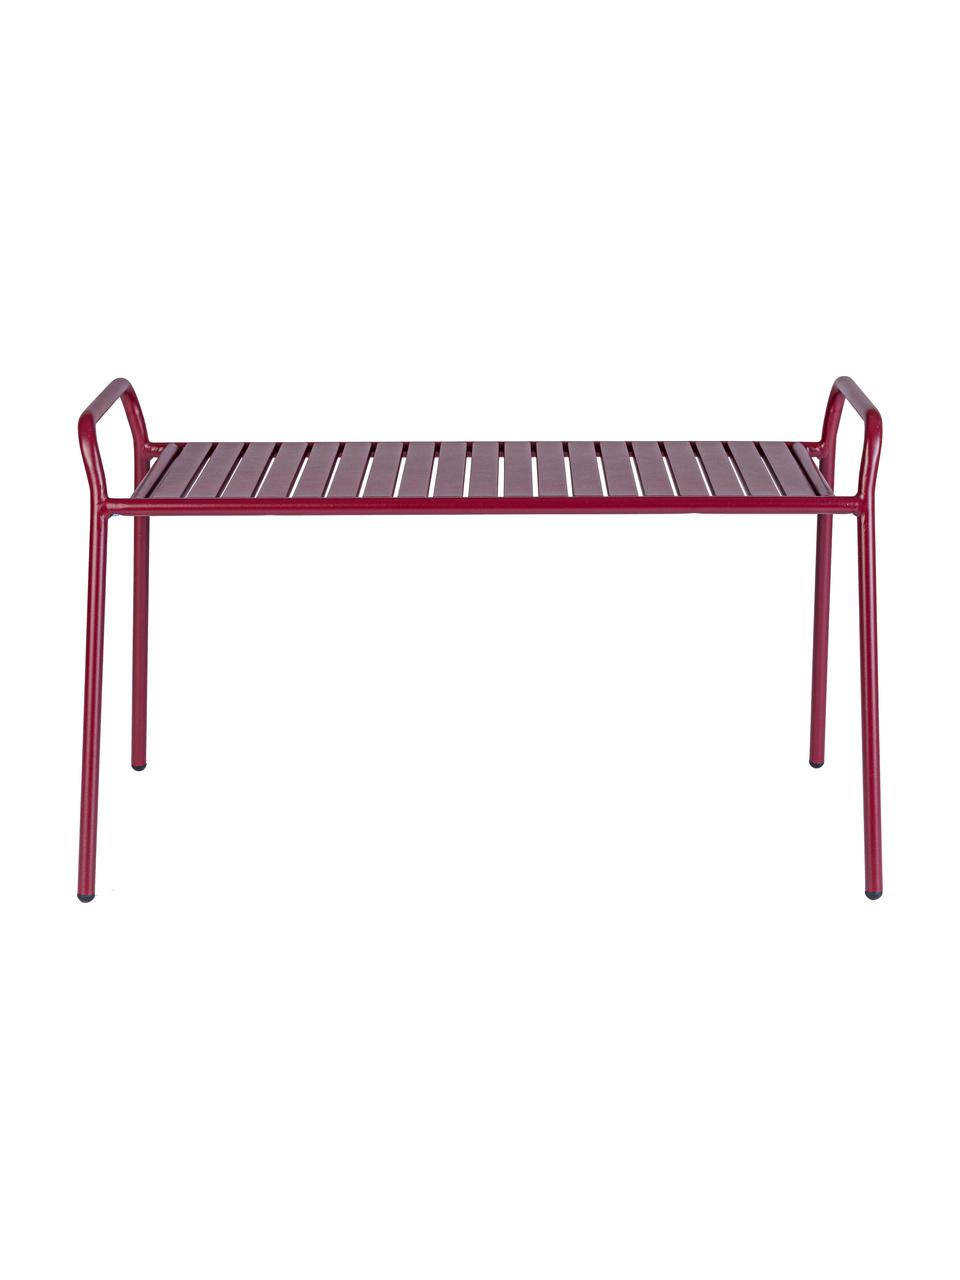 Garten-Sitzbank Dalya aus Metall in Rot, Stahl, pulverbeschichtet, Burgundrot, B 88 x H 51 cm